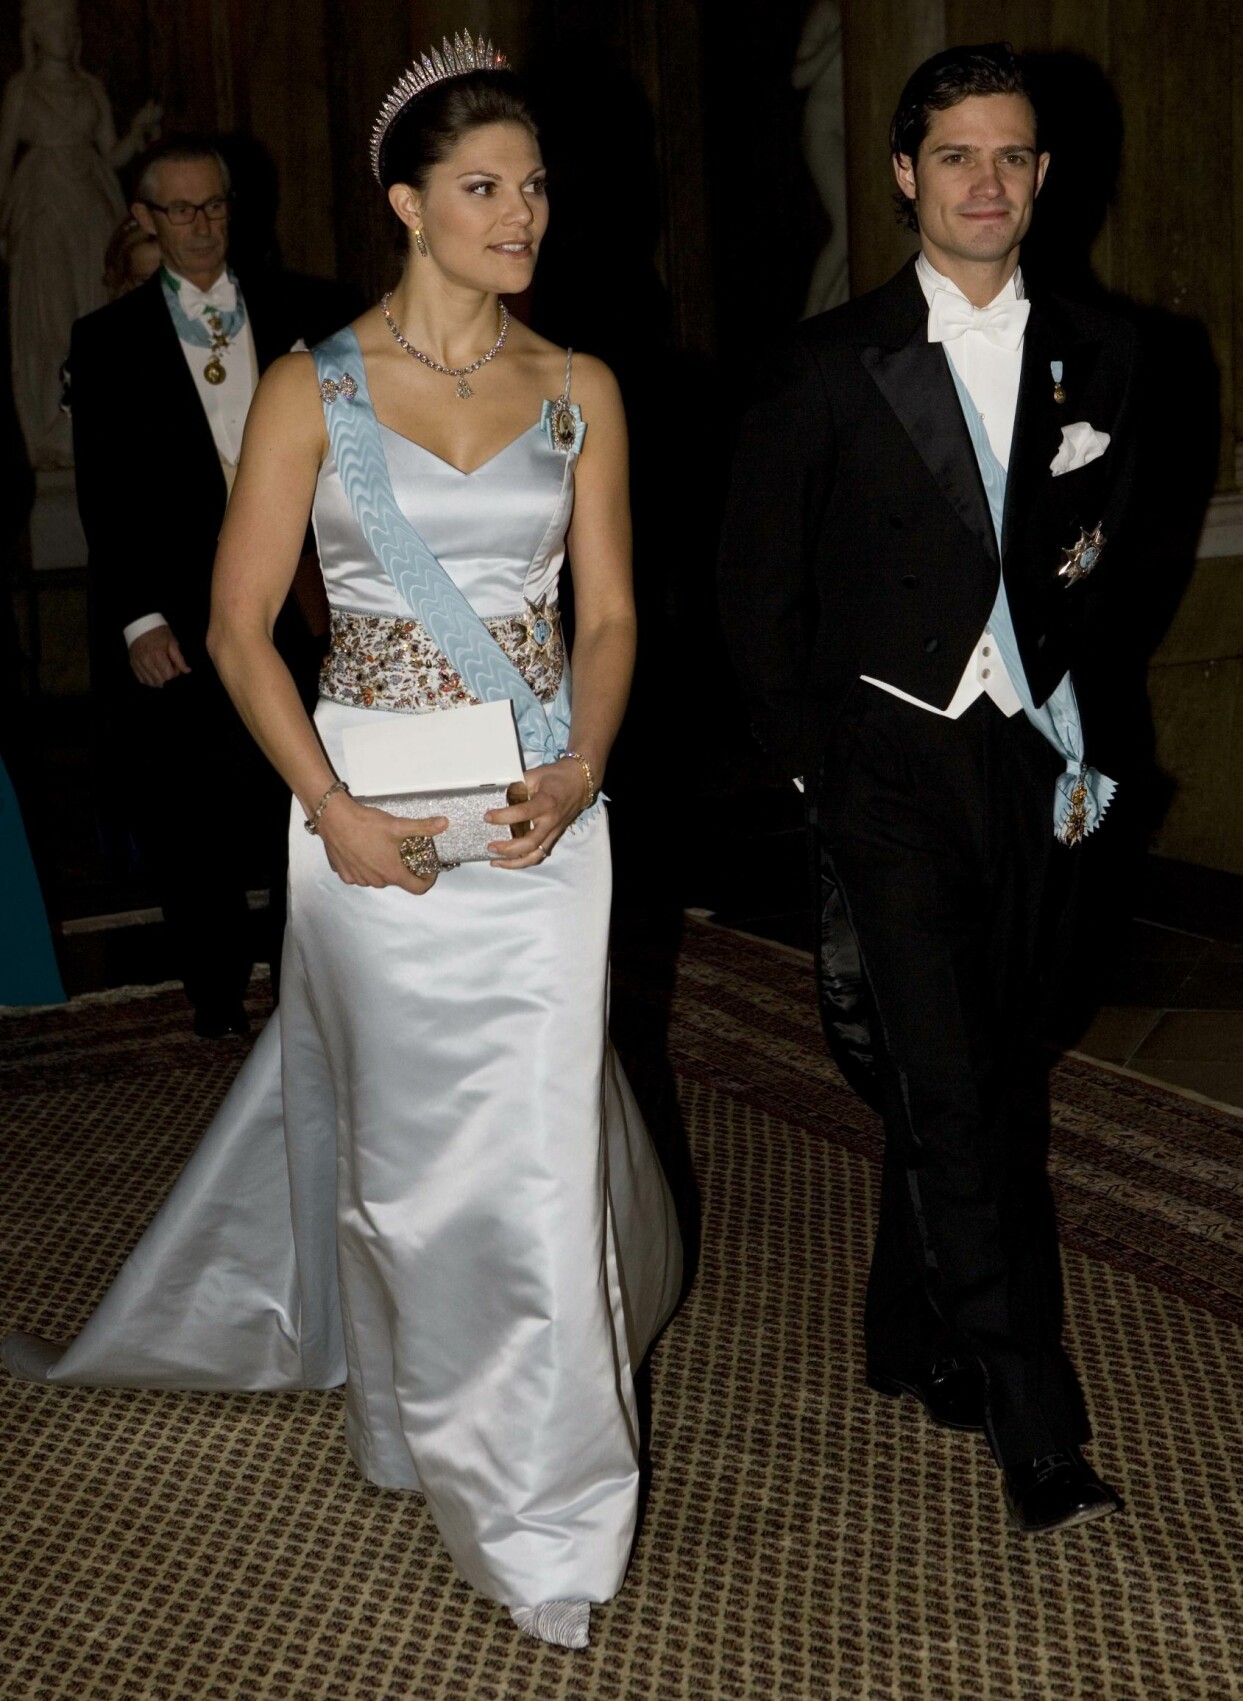 Kronprinsessan Victoria och prins Carl Philip under kungamiddagen på slottet i Stockholm 2007.